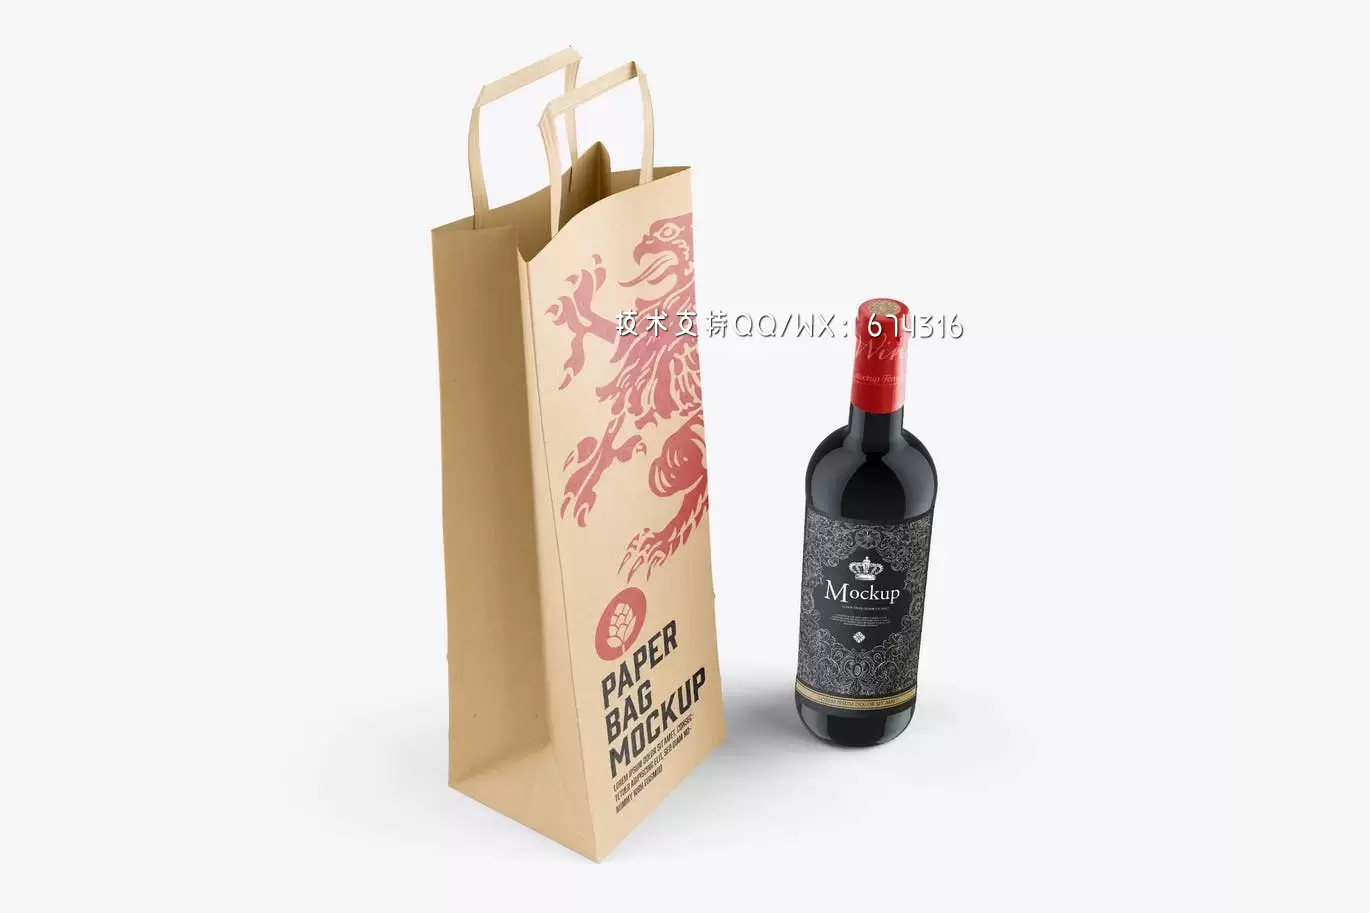 酒瓶和包装袋模型(PSD)免费下载